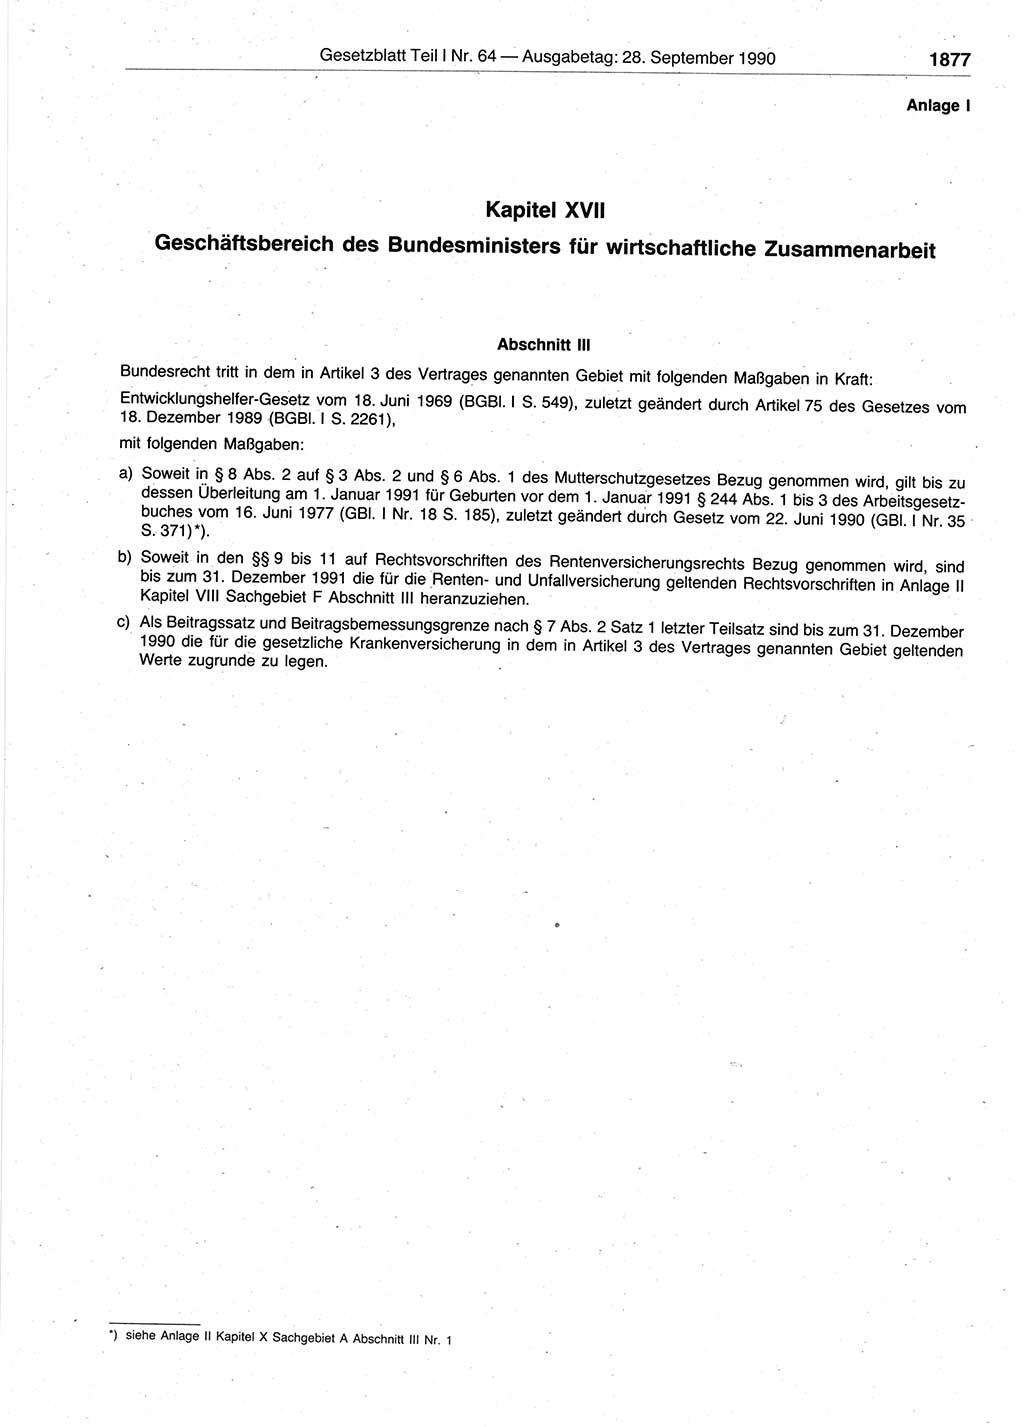 Gesetzblatt (GBl.) der Deutschen Demokratischen Republik (DDR) Teil Ⅰ 1990, Seite 1877 (GBl. DDR Ⅰ 1990, S. 1877)